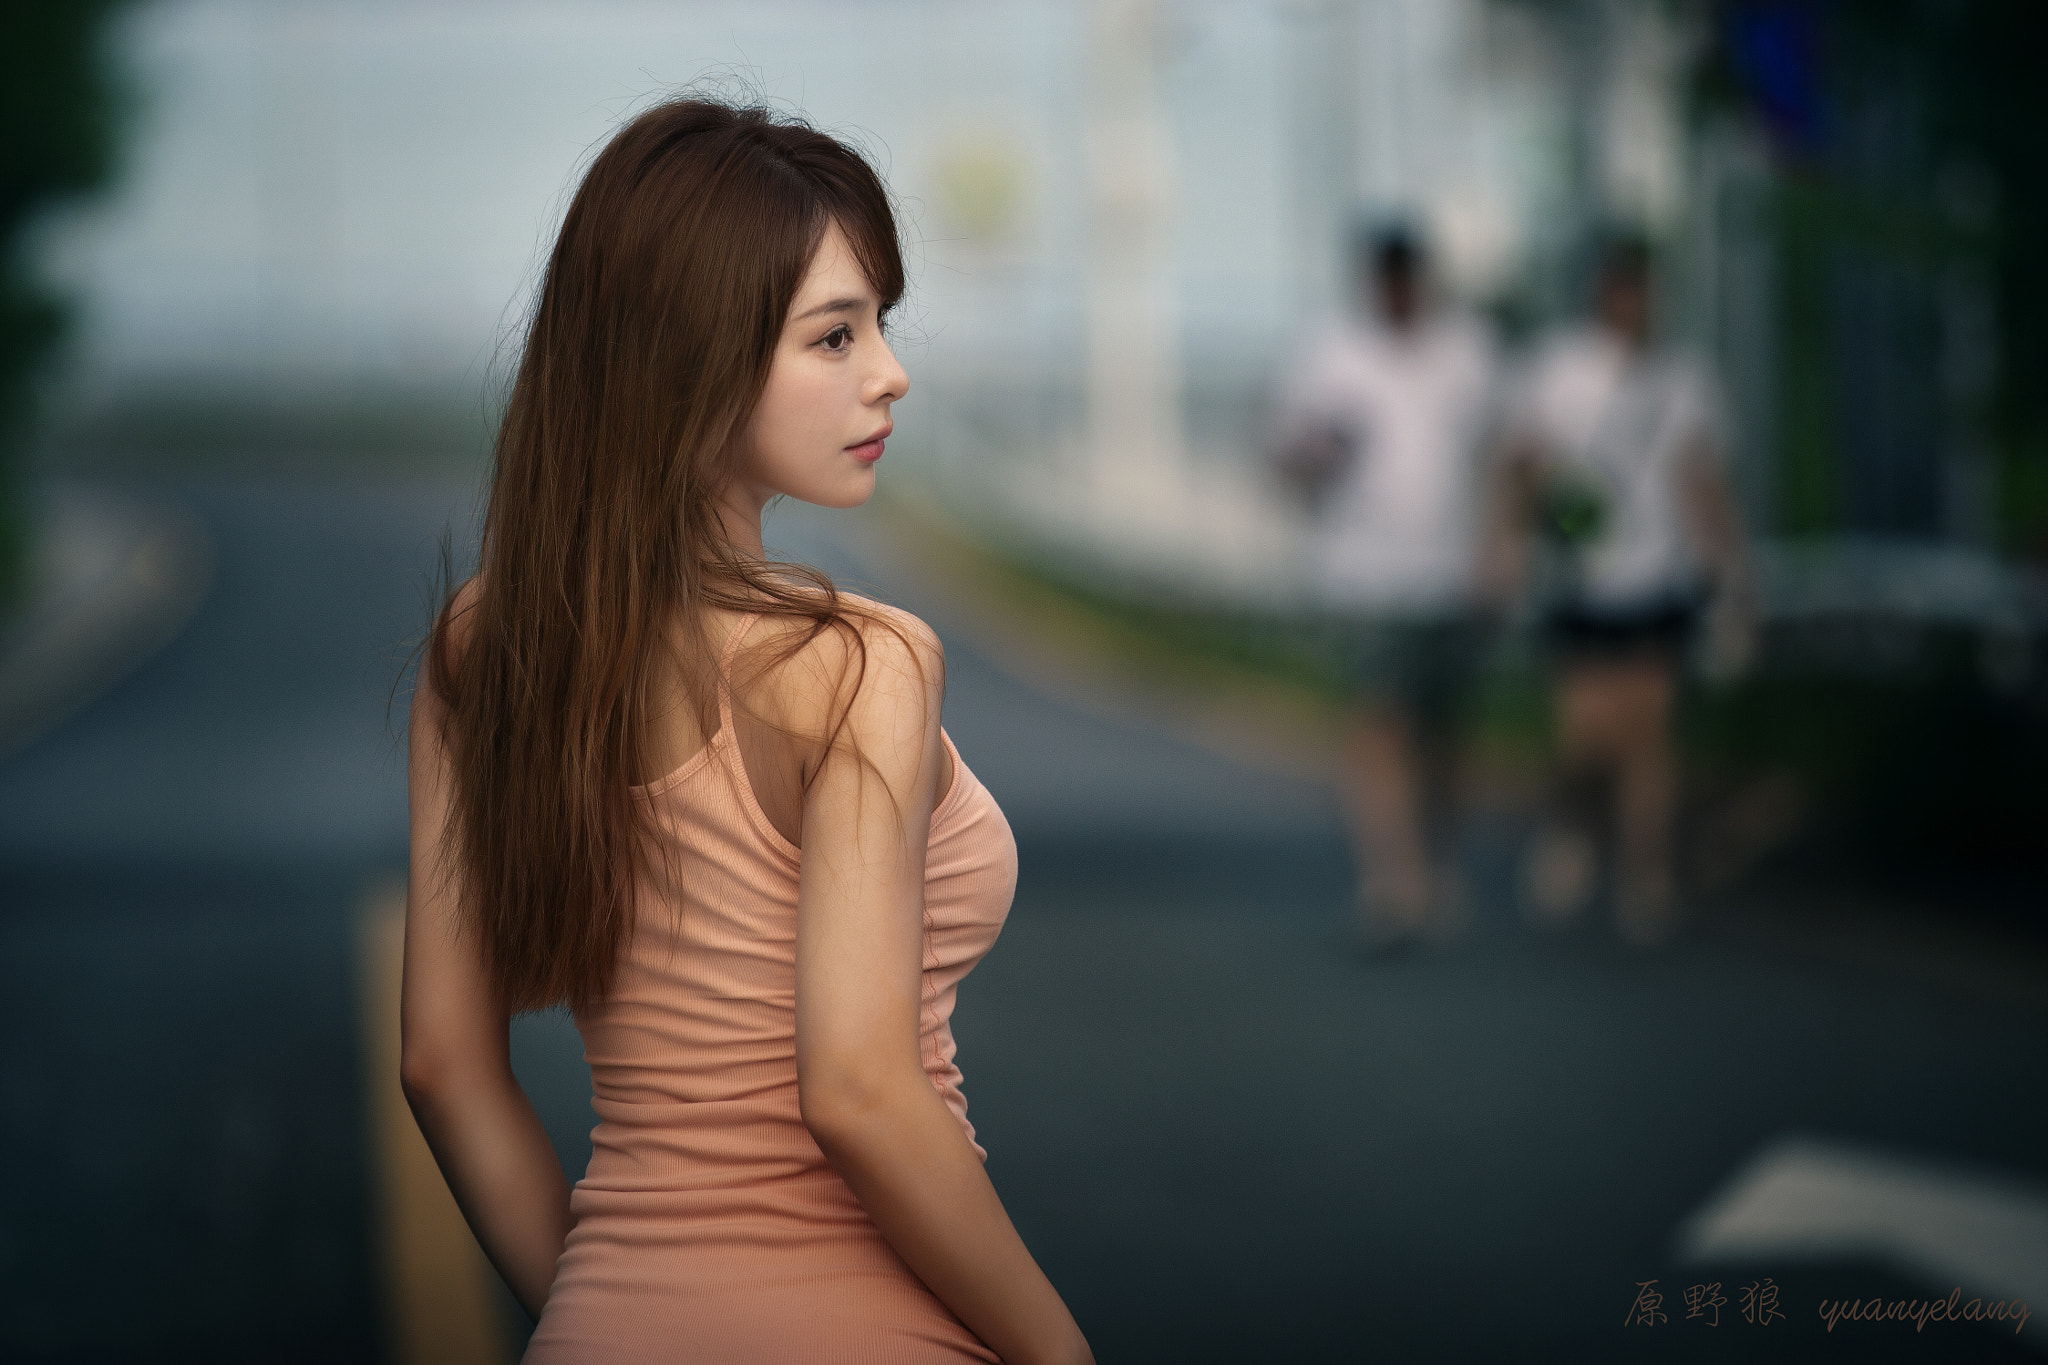 Yuan Yelang Women Asian Brunette Long Hair Dress Pink Clothing Depth Of Field 2048x1365